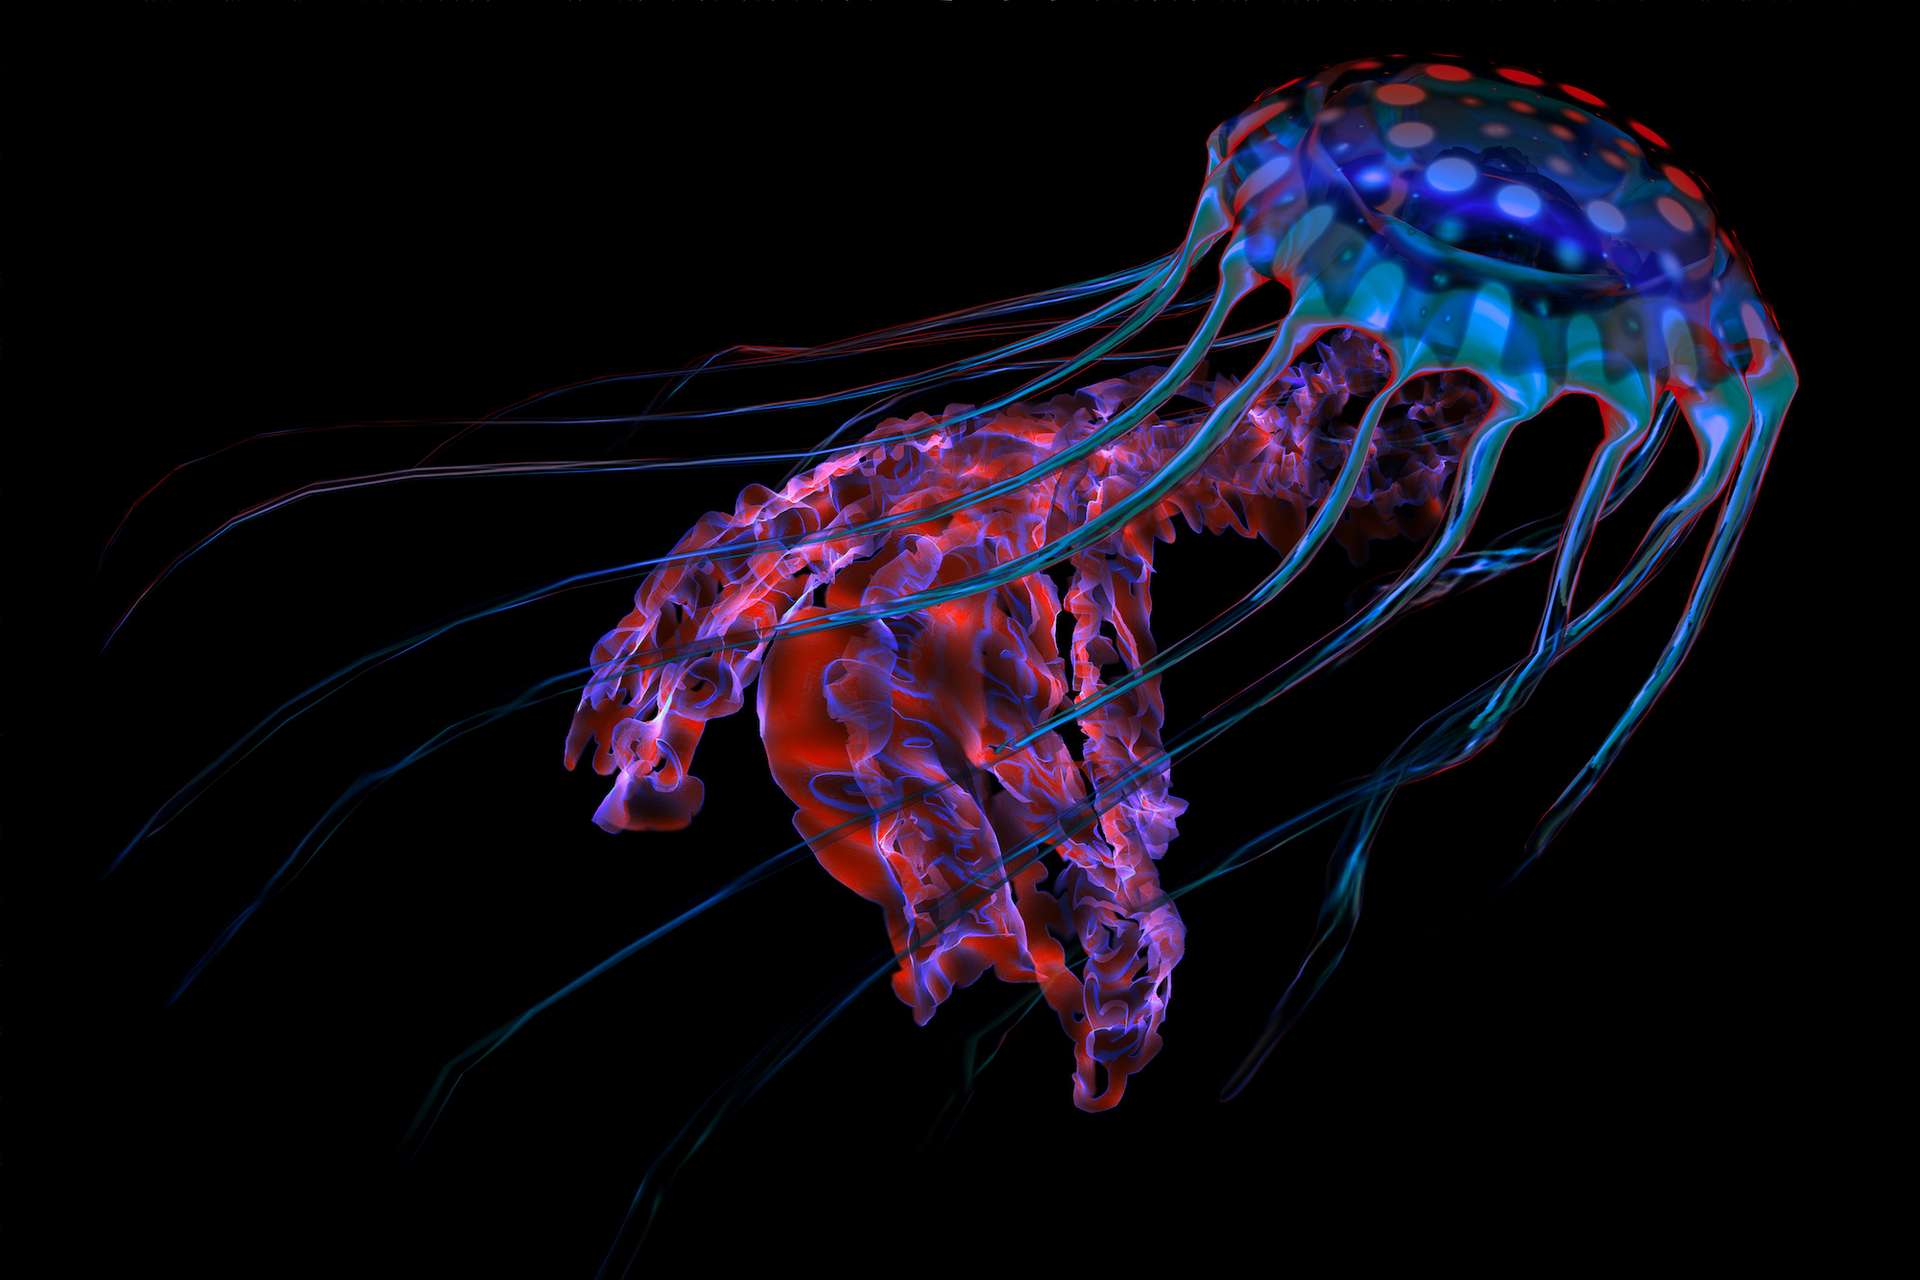 La bioluminescence serait apparue chez les animaux il y a 540 millions d’années !